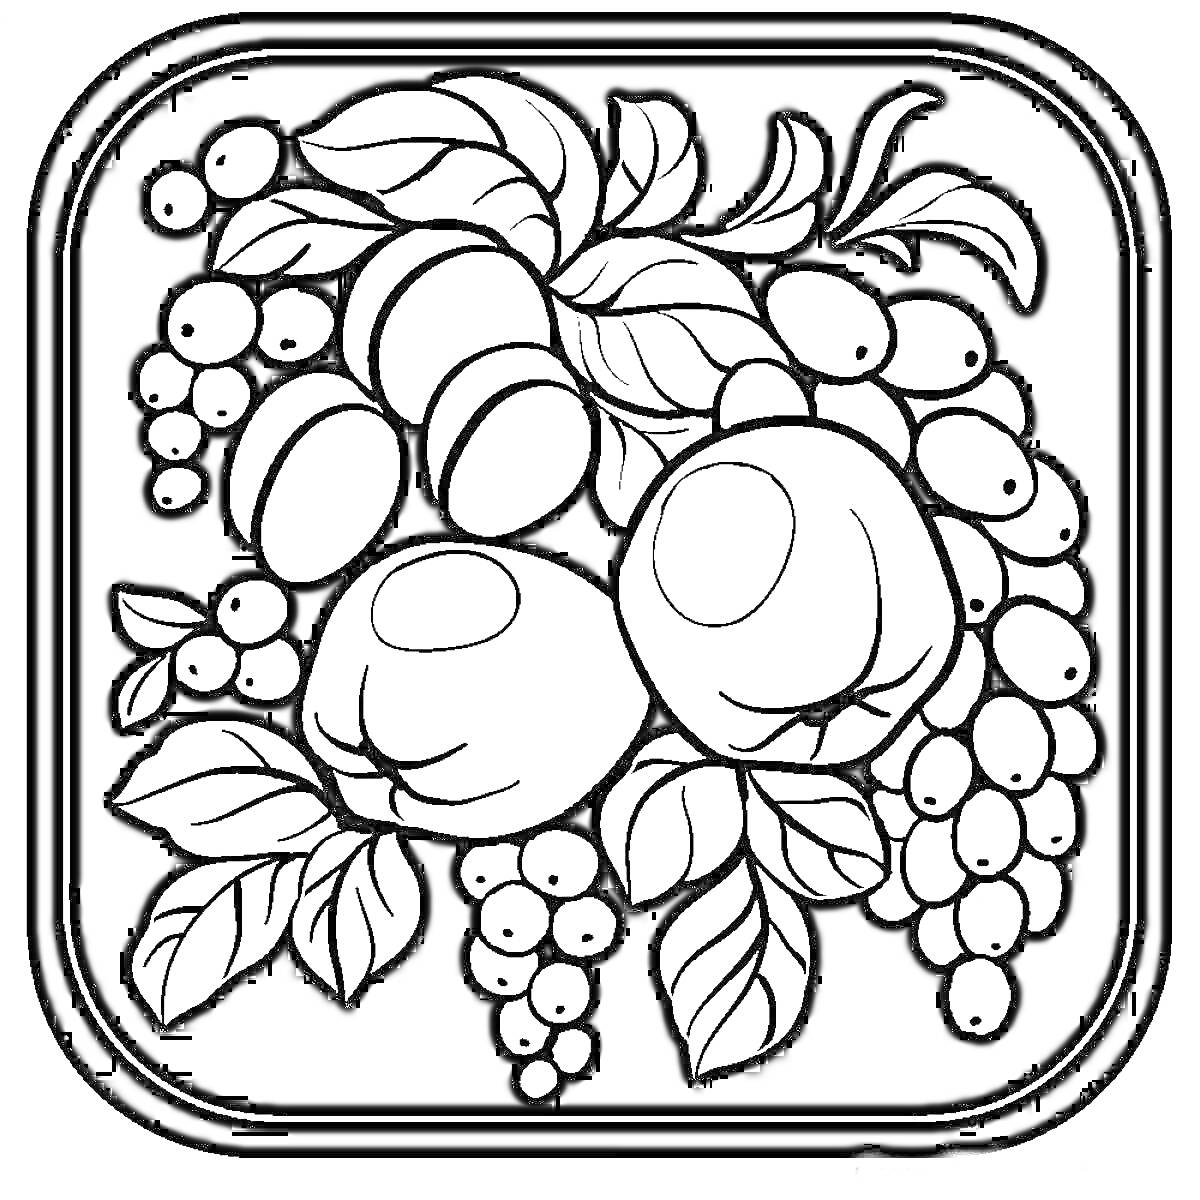 Жостовская роспись с цветами и фруктами, листья, веточки, бутоны, ягоды, плоды